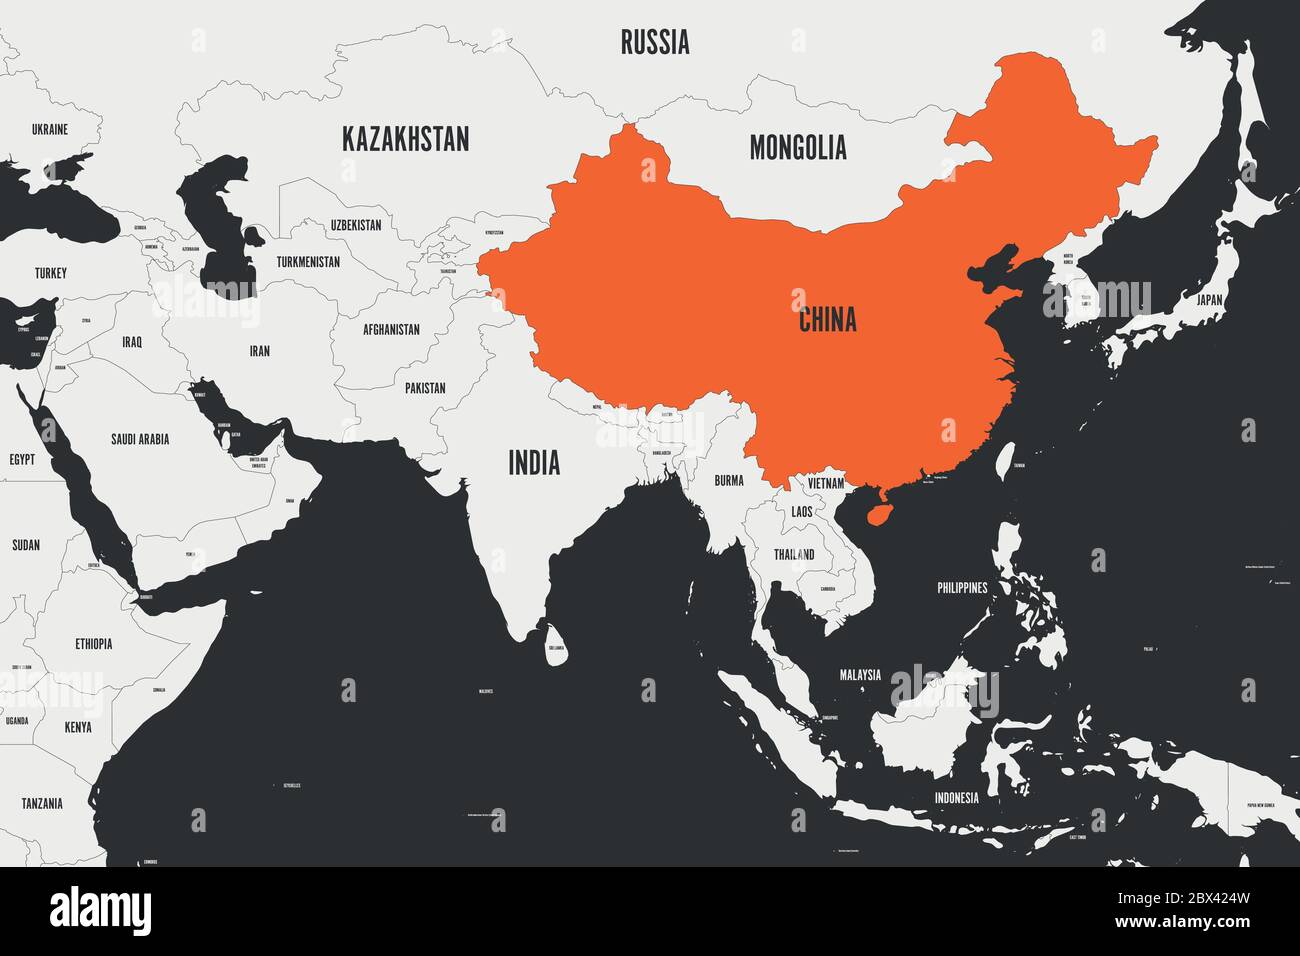 Chine marquée en orange sur la carte politique de l'Asie du Sud. Illustration vectorielle. Illustration de Vecteur